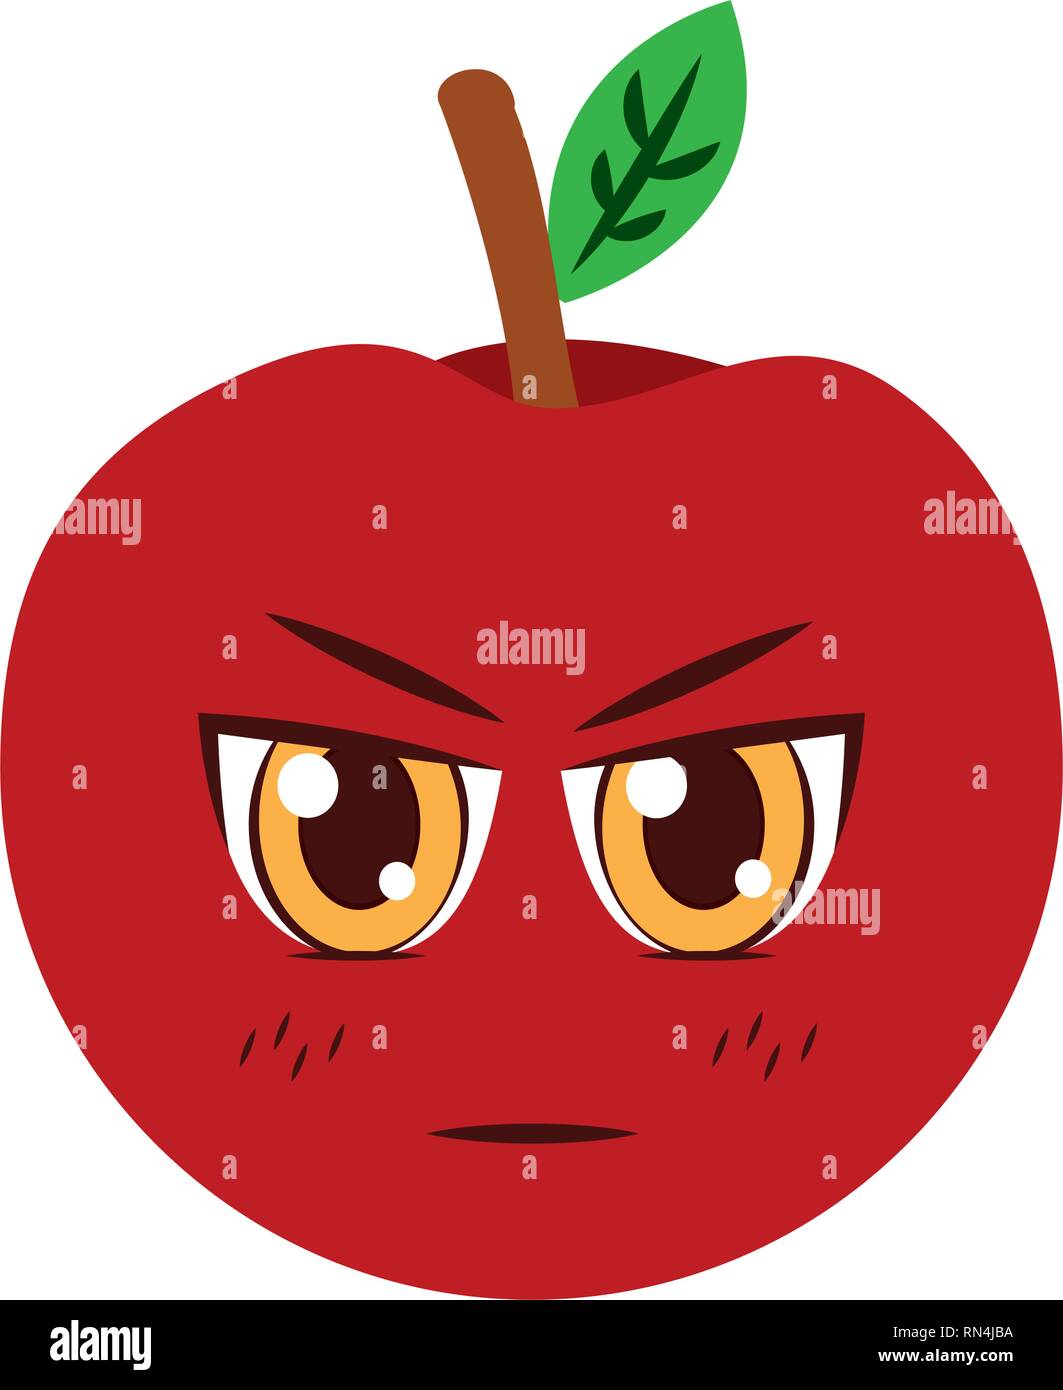 kawaii apple cartoon character Stock Vector